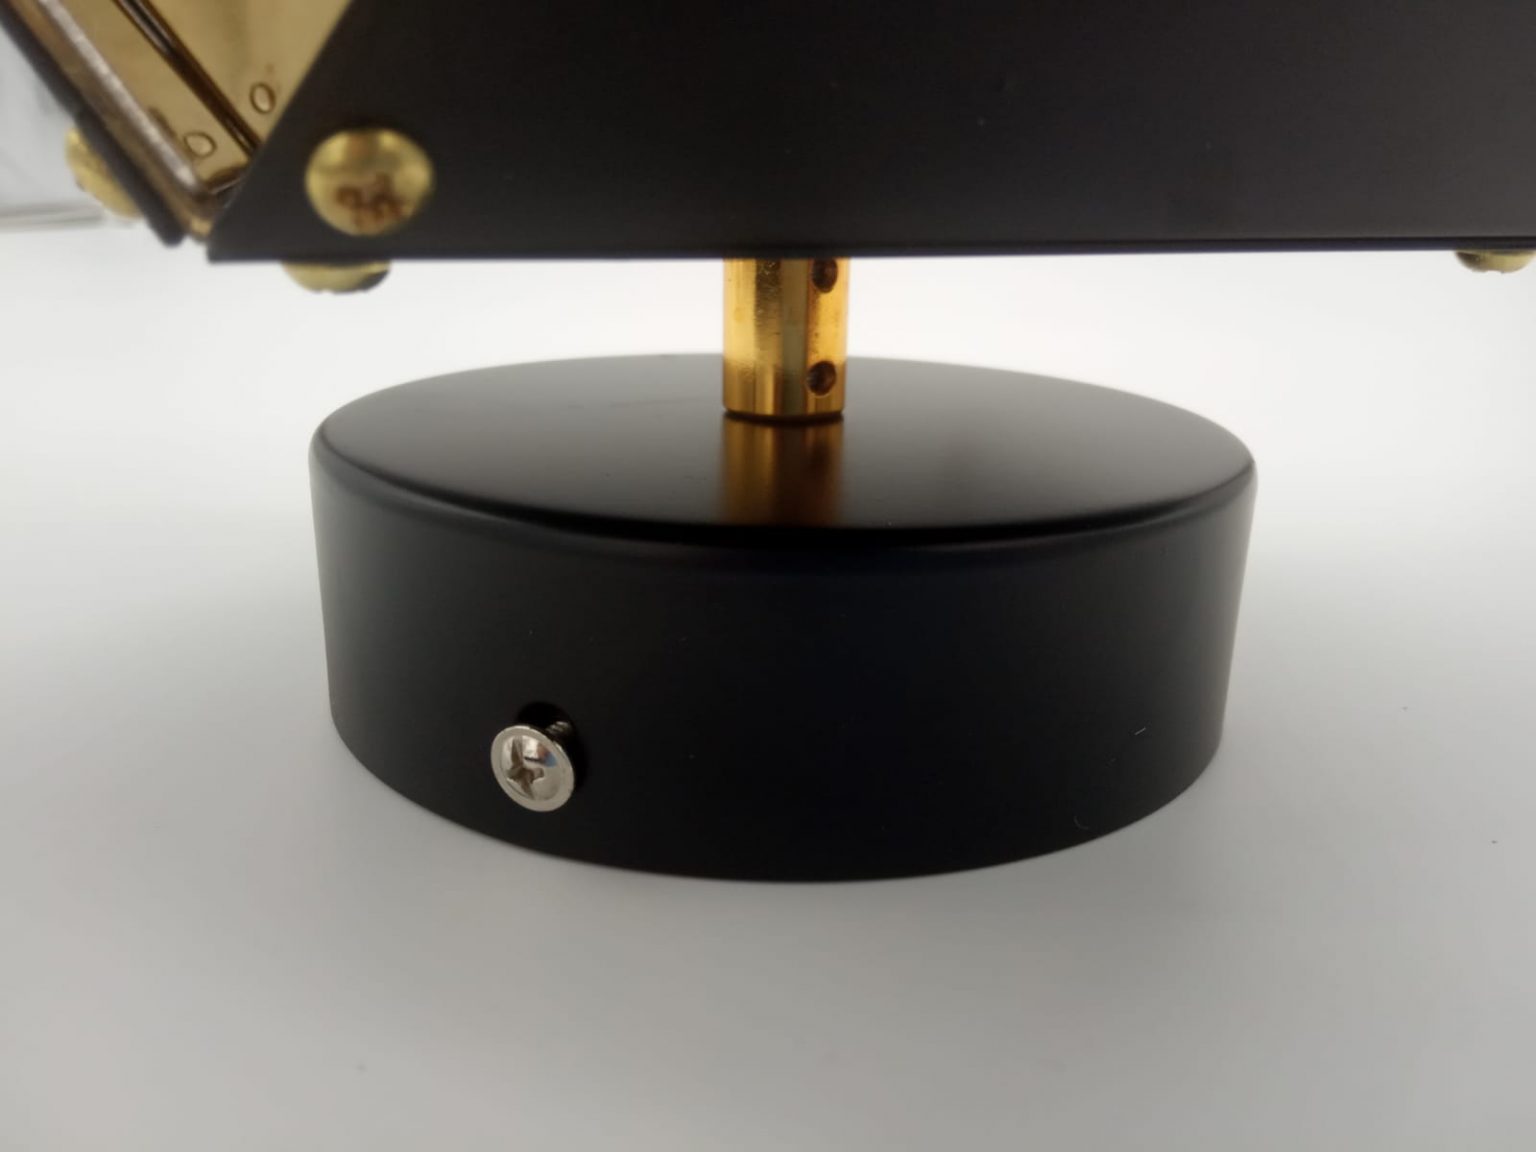 Lampa ścienna NEW GEOMETRY-1 czarno złota 15,5 cm